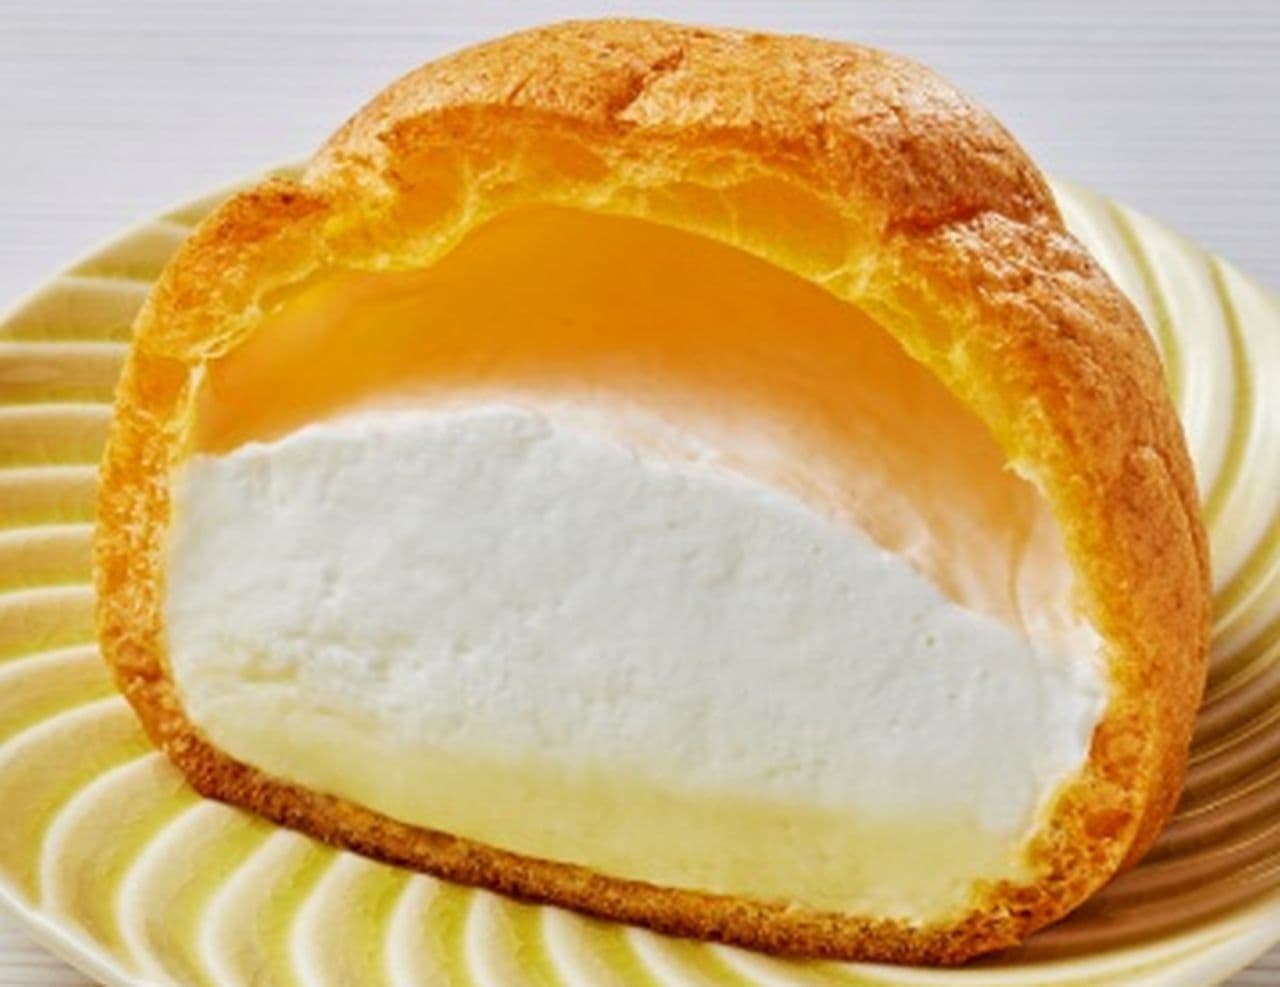 ローソン 新潟県産の洋梨を使用したシュークリームや米粉や牛乳を使用したスフレ・ブレッドの計3品を発売